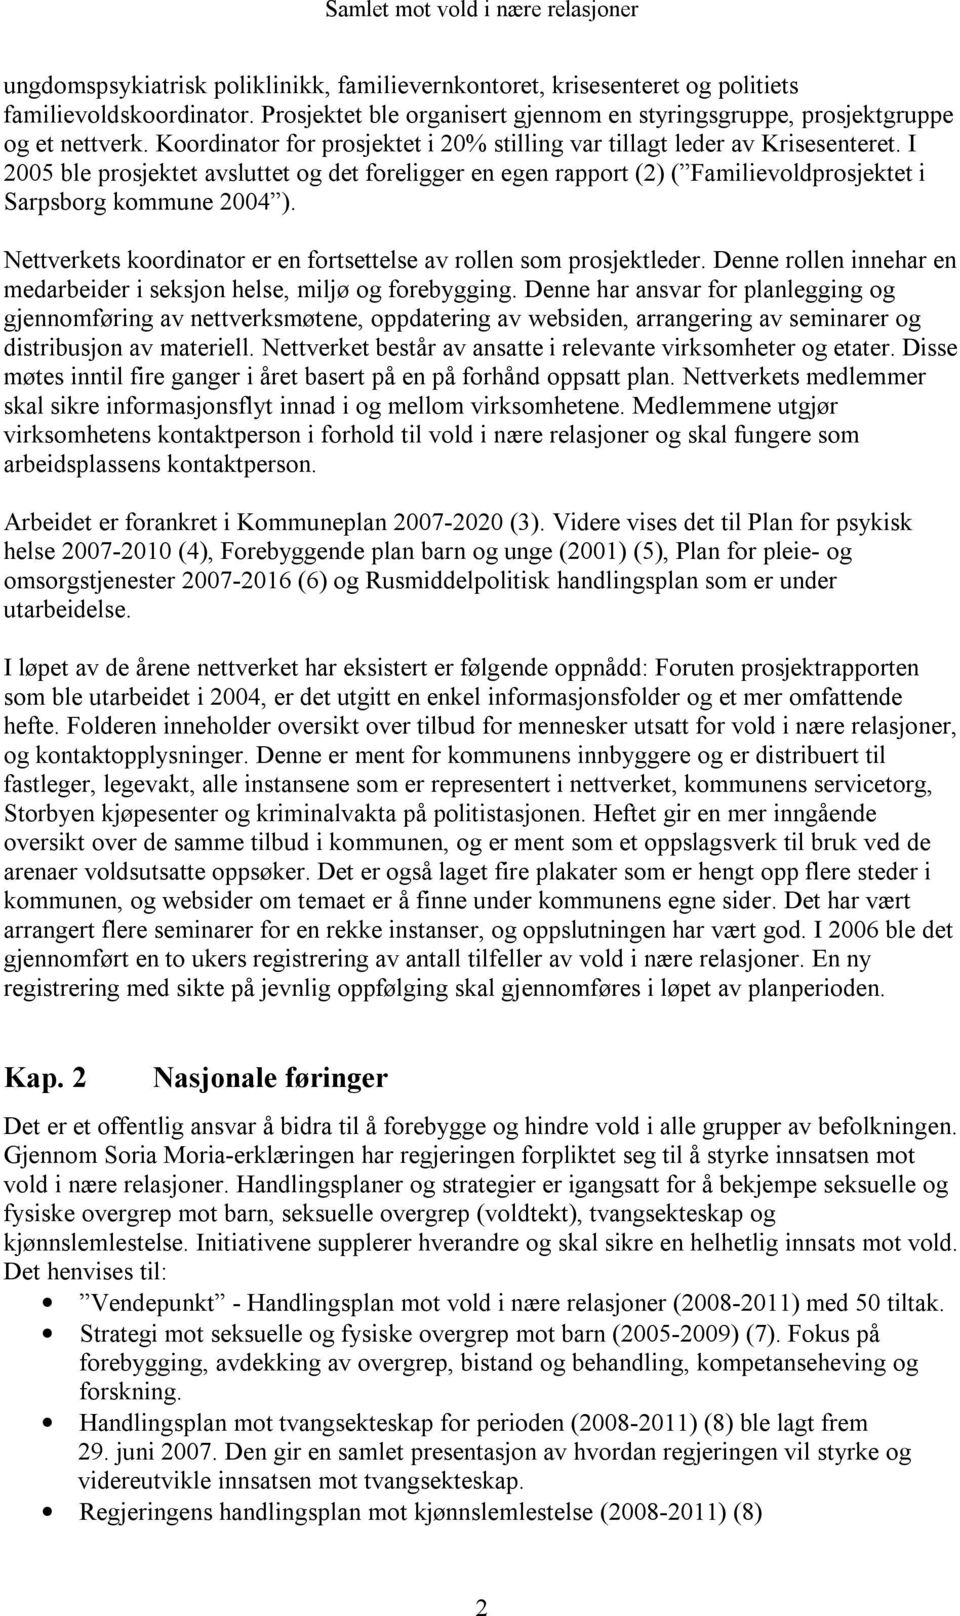 I 2005 ble prosjektet avsluttet og det foreligger en egen rapport (2) ( Familievoldprosjektet i Sarpsborg kommune 2004 ). Nettverkets koordinator er en fortsettelse av rollen som prosjektleder.